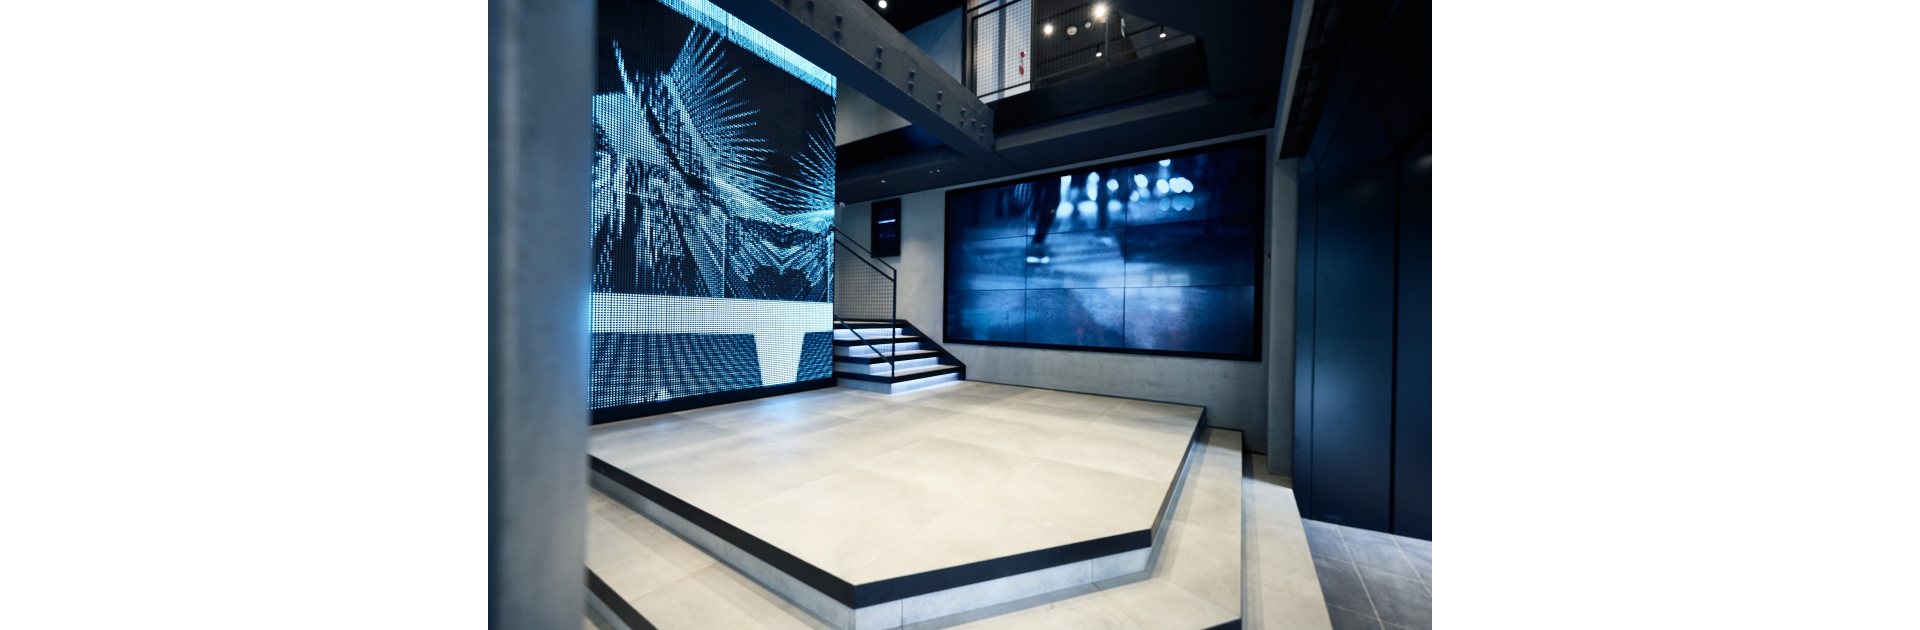 全新開幕adidas西門漢中門市，入口處以巨幅LED螢幕及電視牆呈現強烈adidas品牌形象。 4